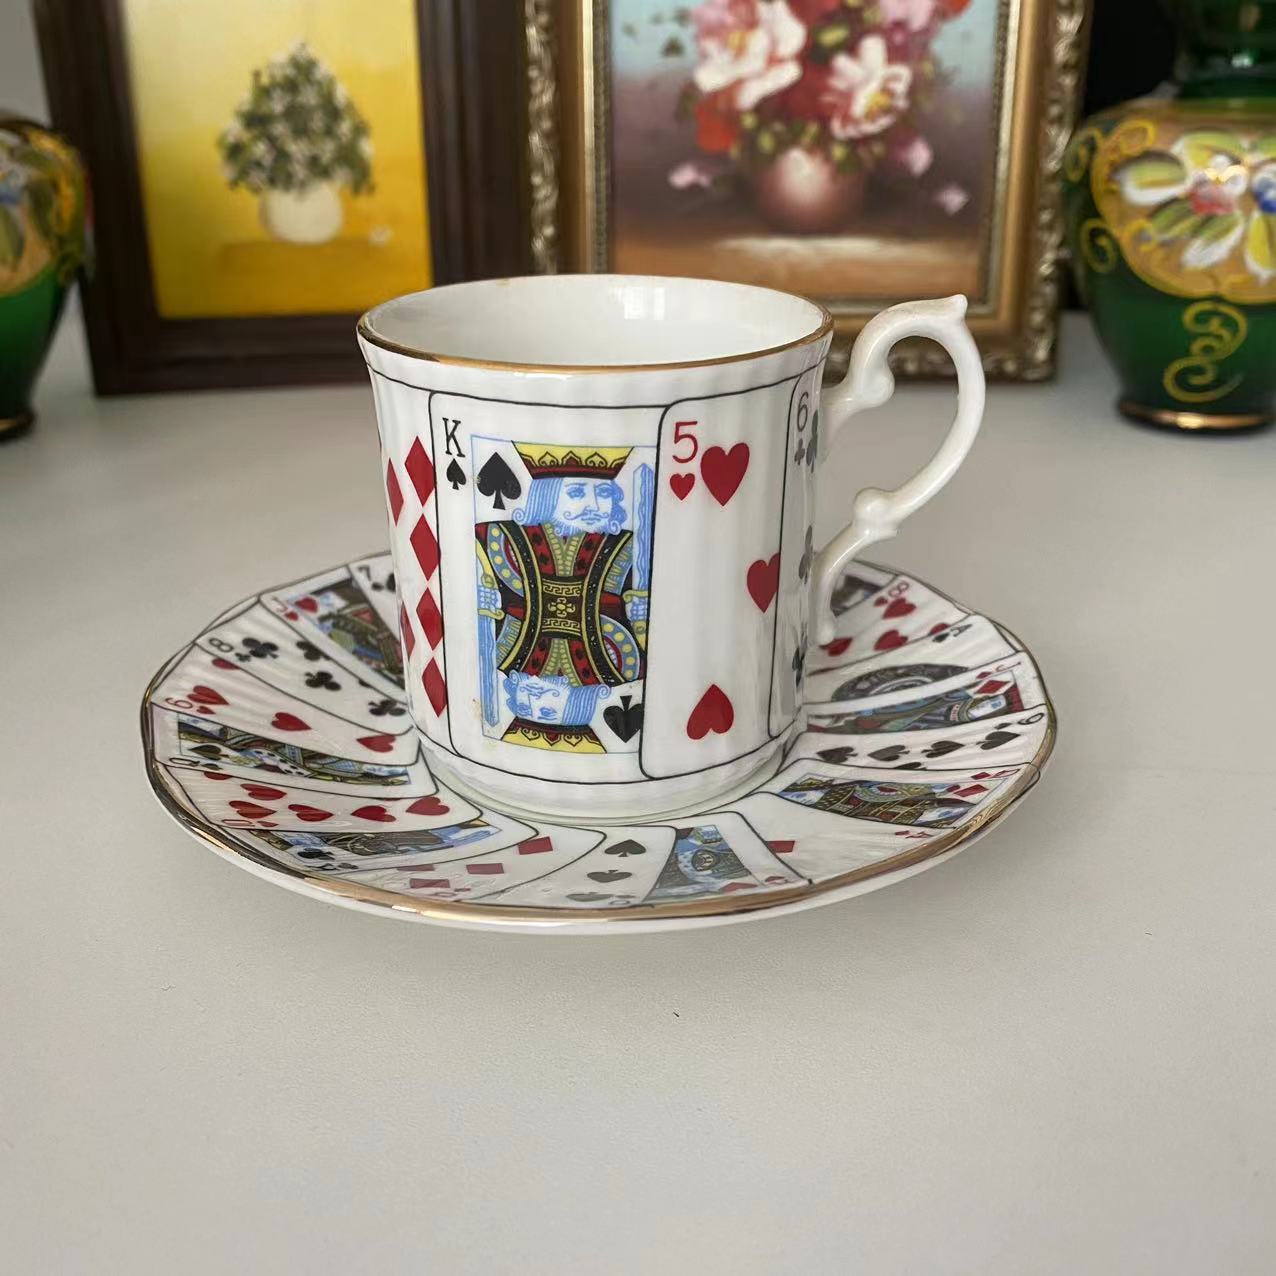 Elisabethan伊丽莎白扑克牌英国骨瓷浓缩咖啡杯纸牌画下午茶杯